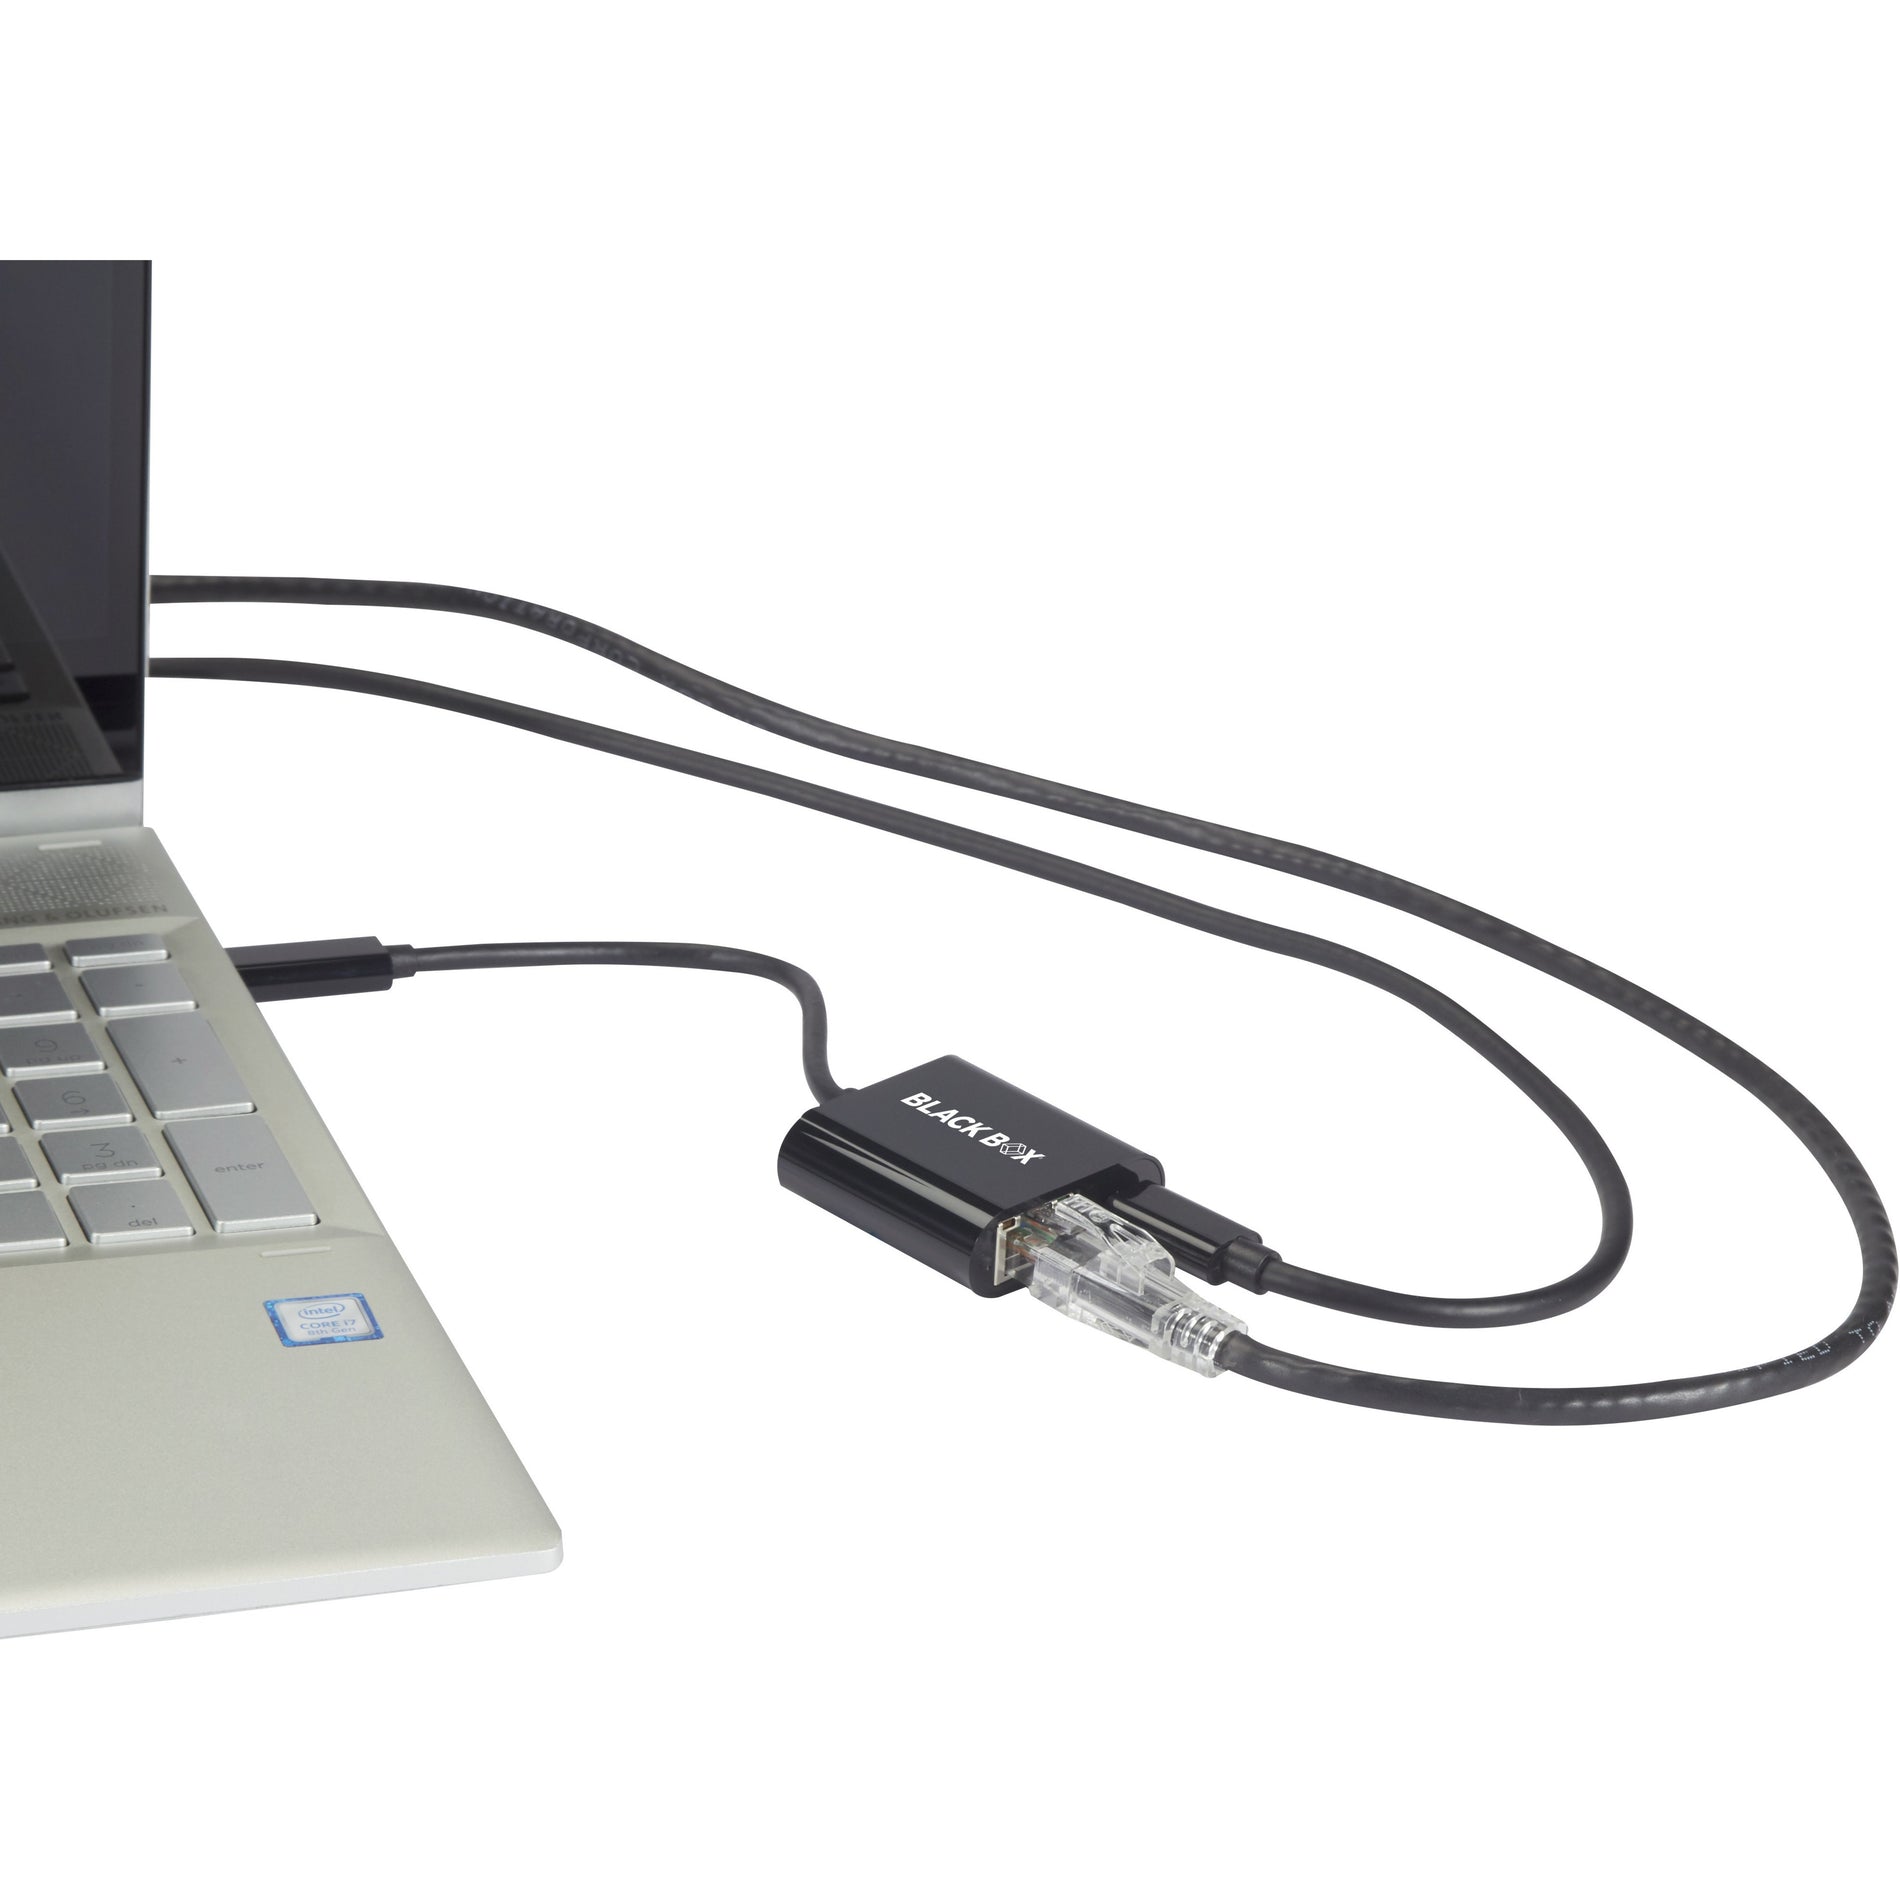 ブラックボックス VA-USBC31-RJ45C ギガビットアダプタードングル - USB 3.1タイプCメス to RJ-45、USB-C to Gigabit イーサネットアダプター with 100W パワー Black Box ブラックボックス